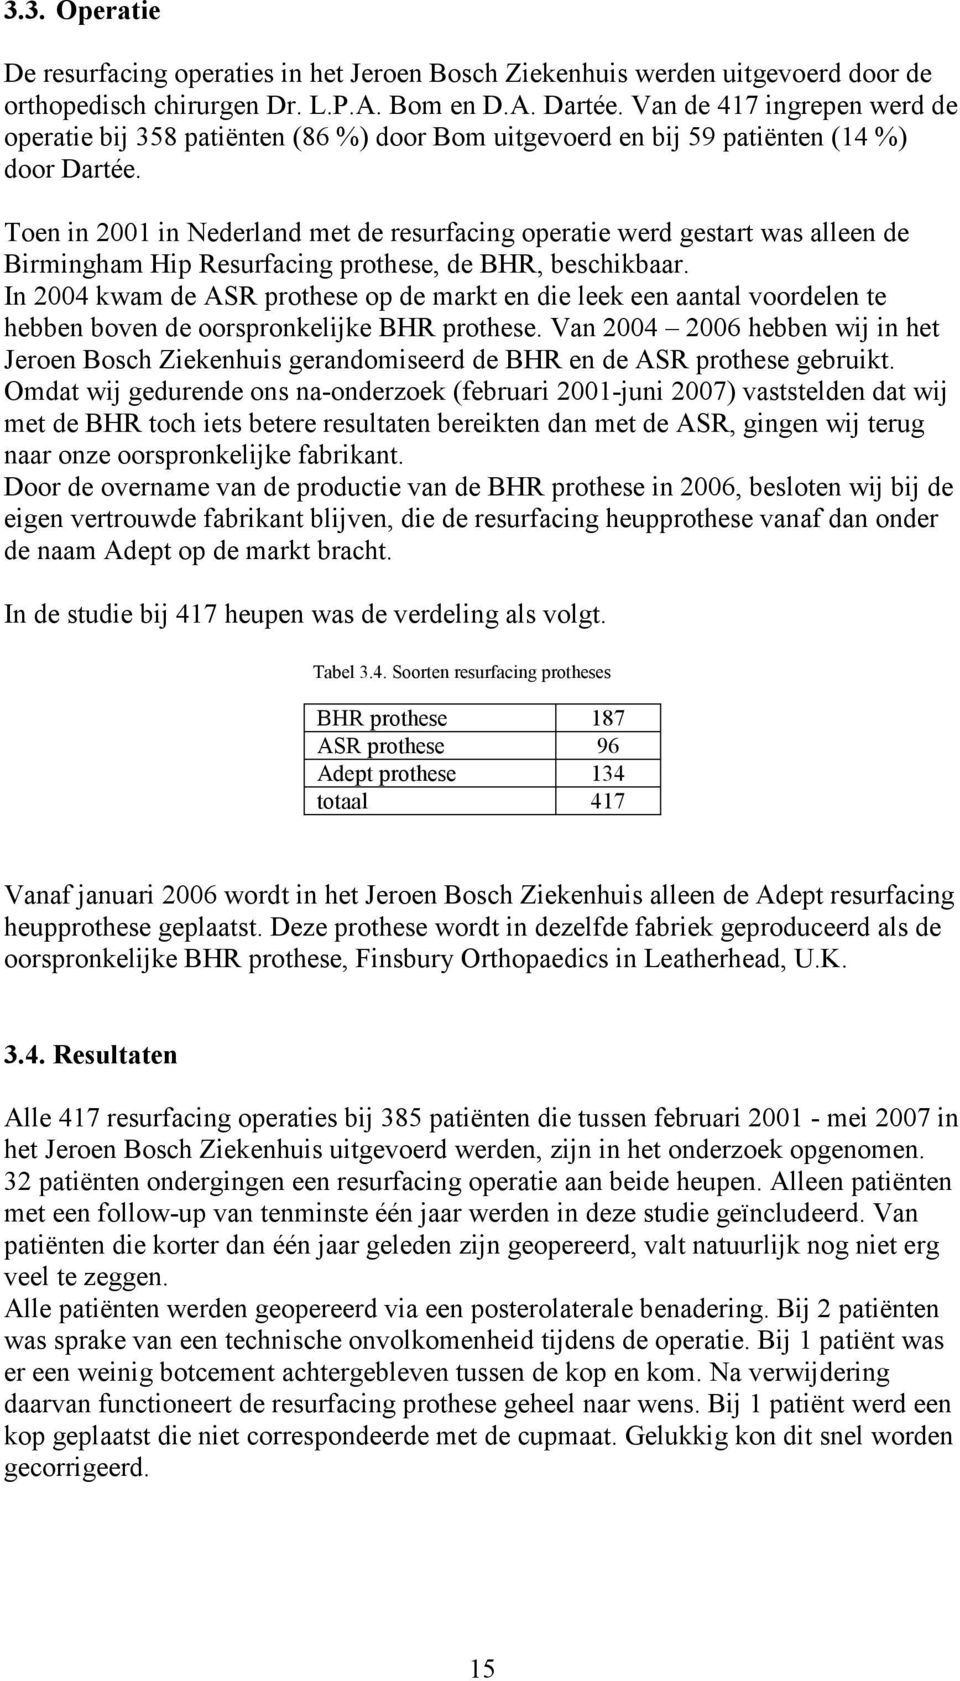 Toen in 2001 in Nederland met de resurfacing operatie werd gestart was alleen de Birmingham Hip Resurfacing prothese, de BHR, beschikbaar.